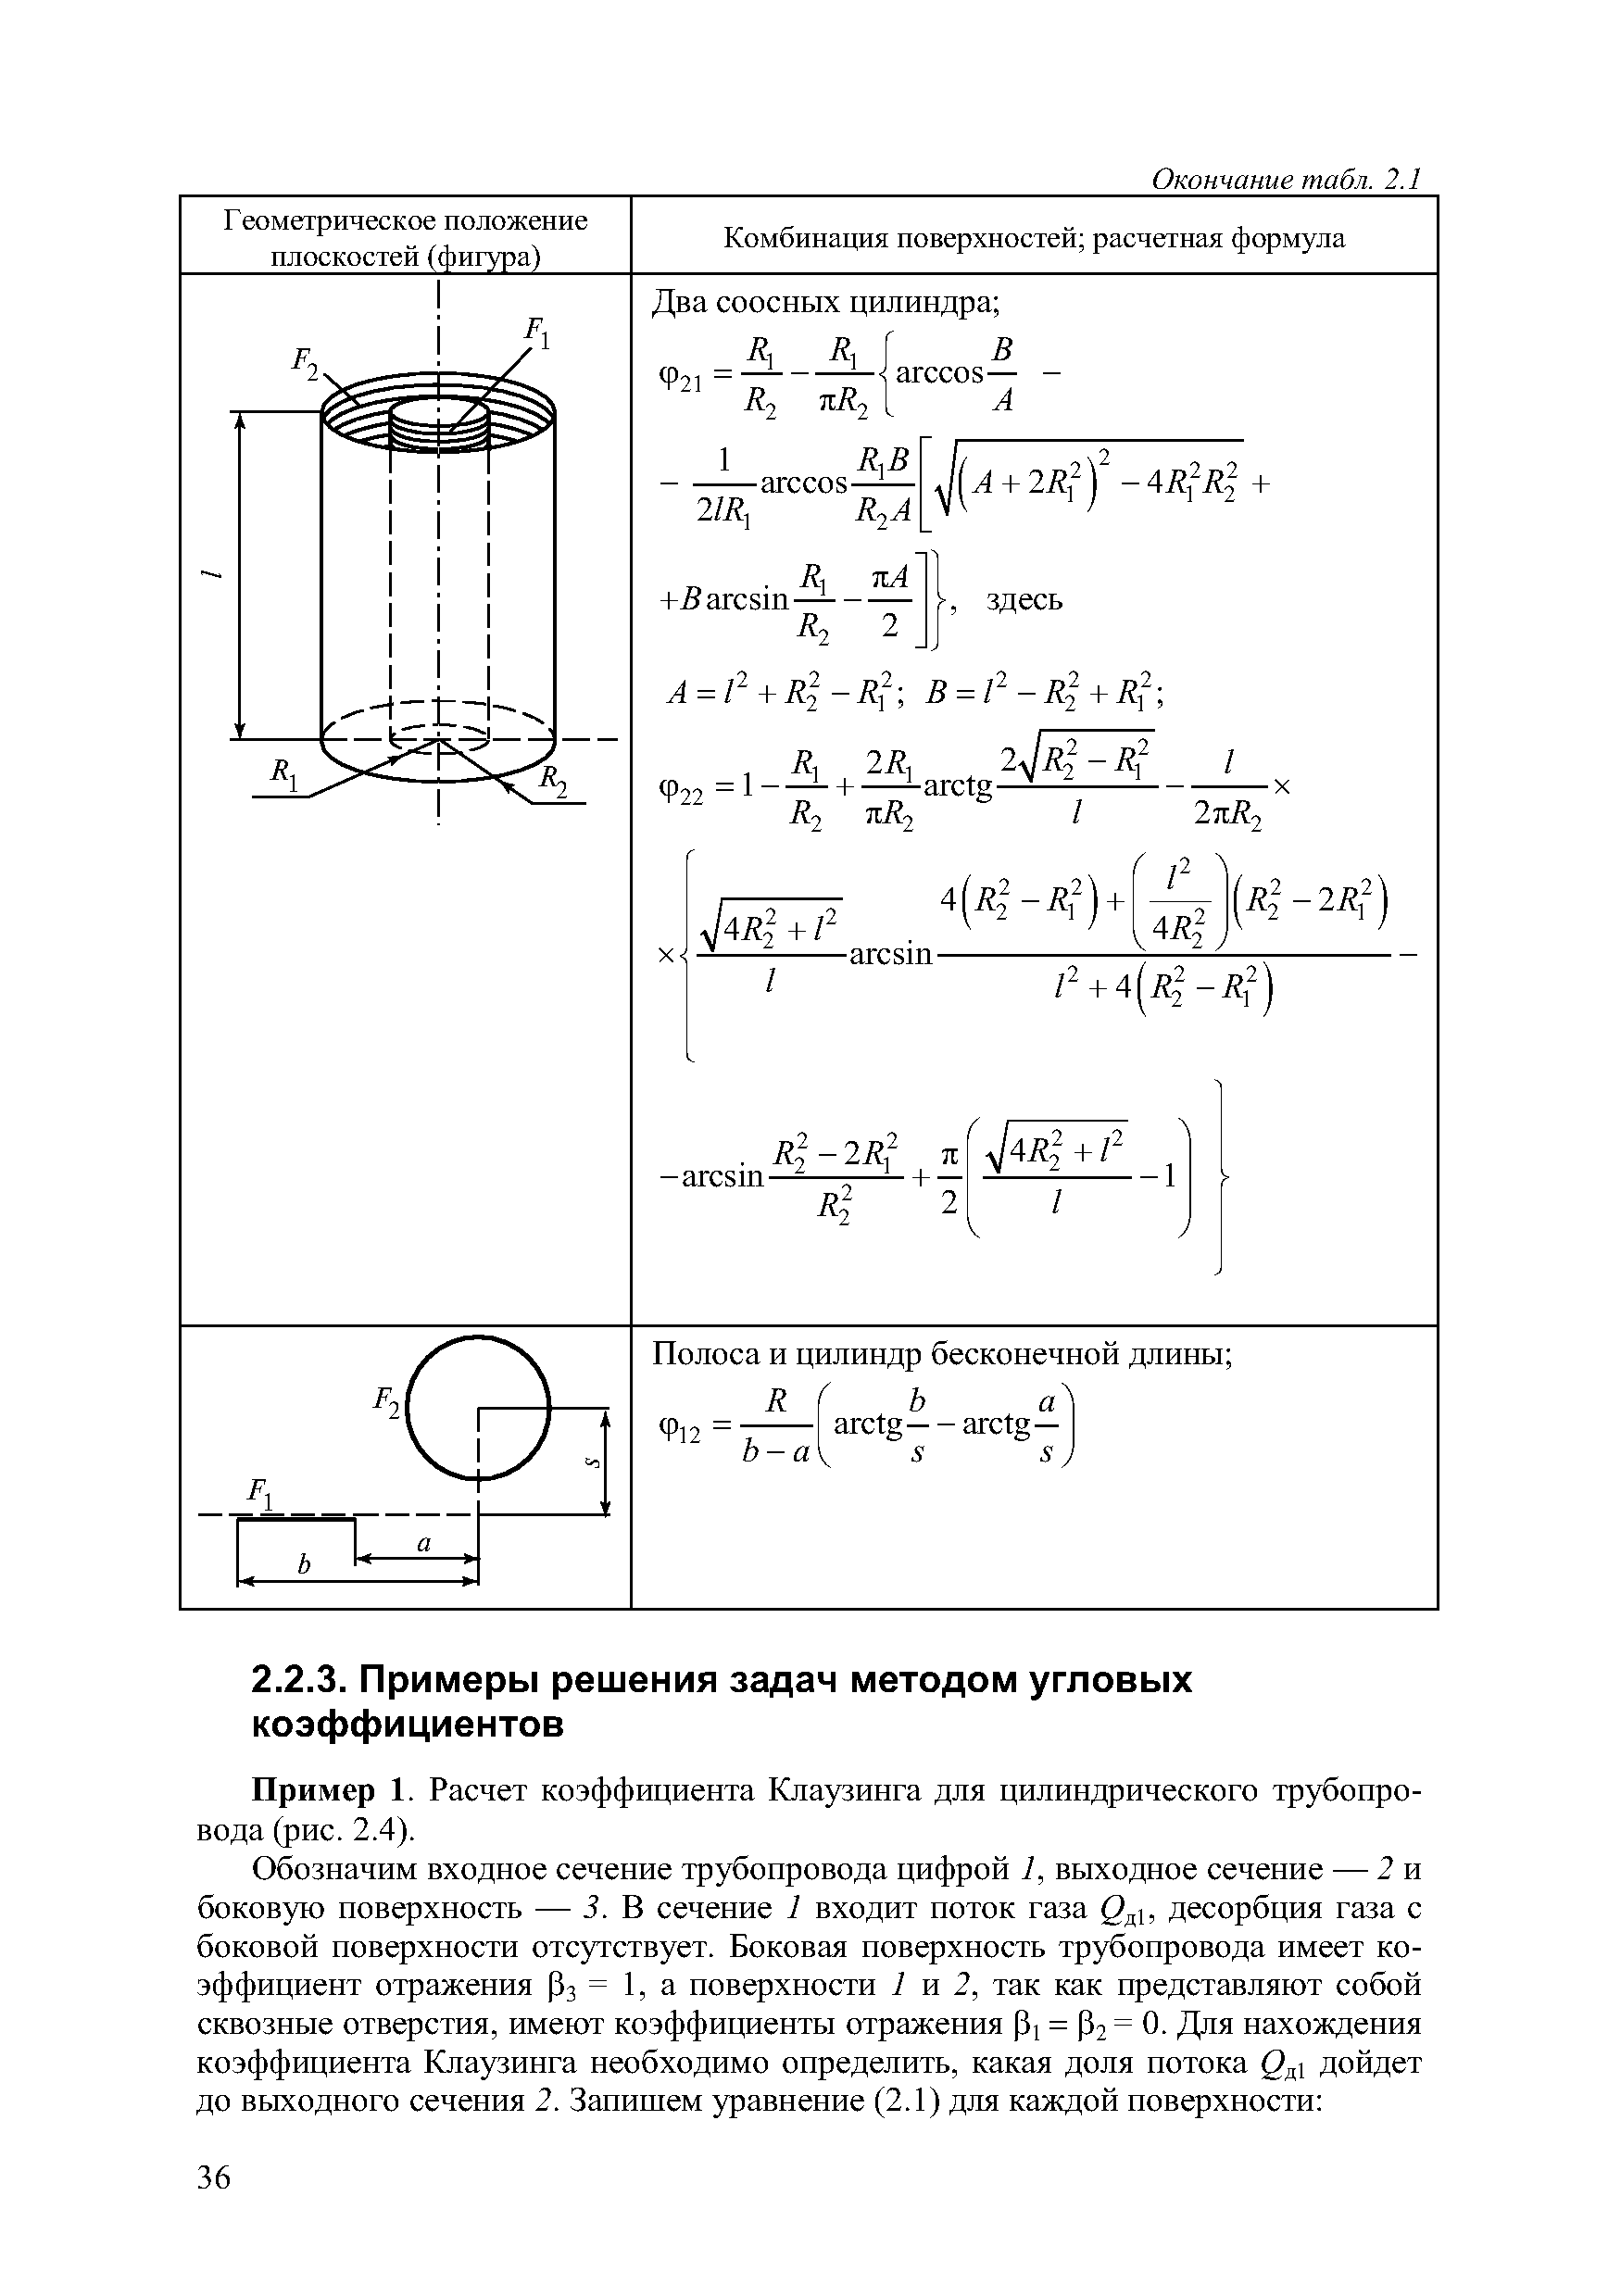 Пример 1. Расчет коэффициента Клаузинга для цилиндрического трубопровода (рис. 2.4).